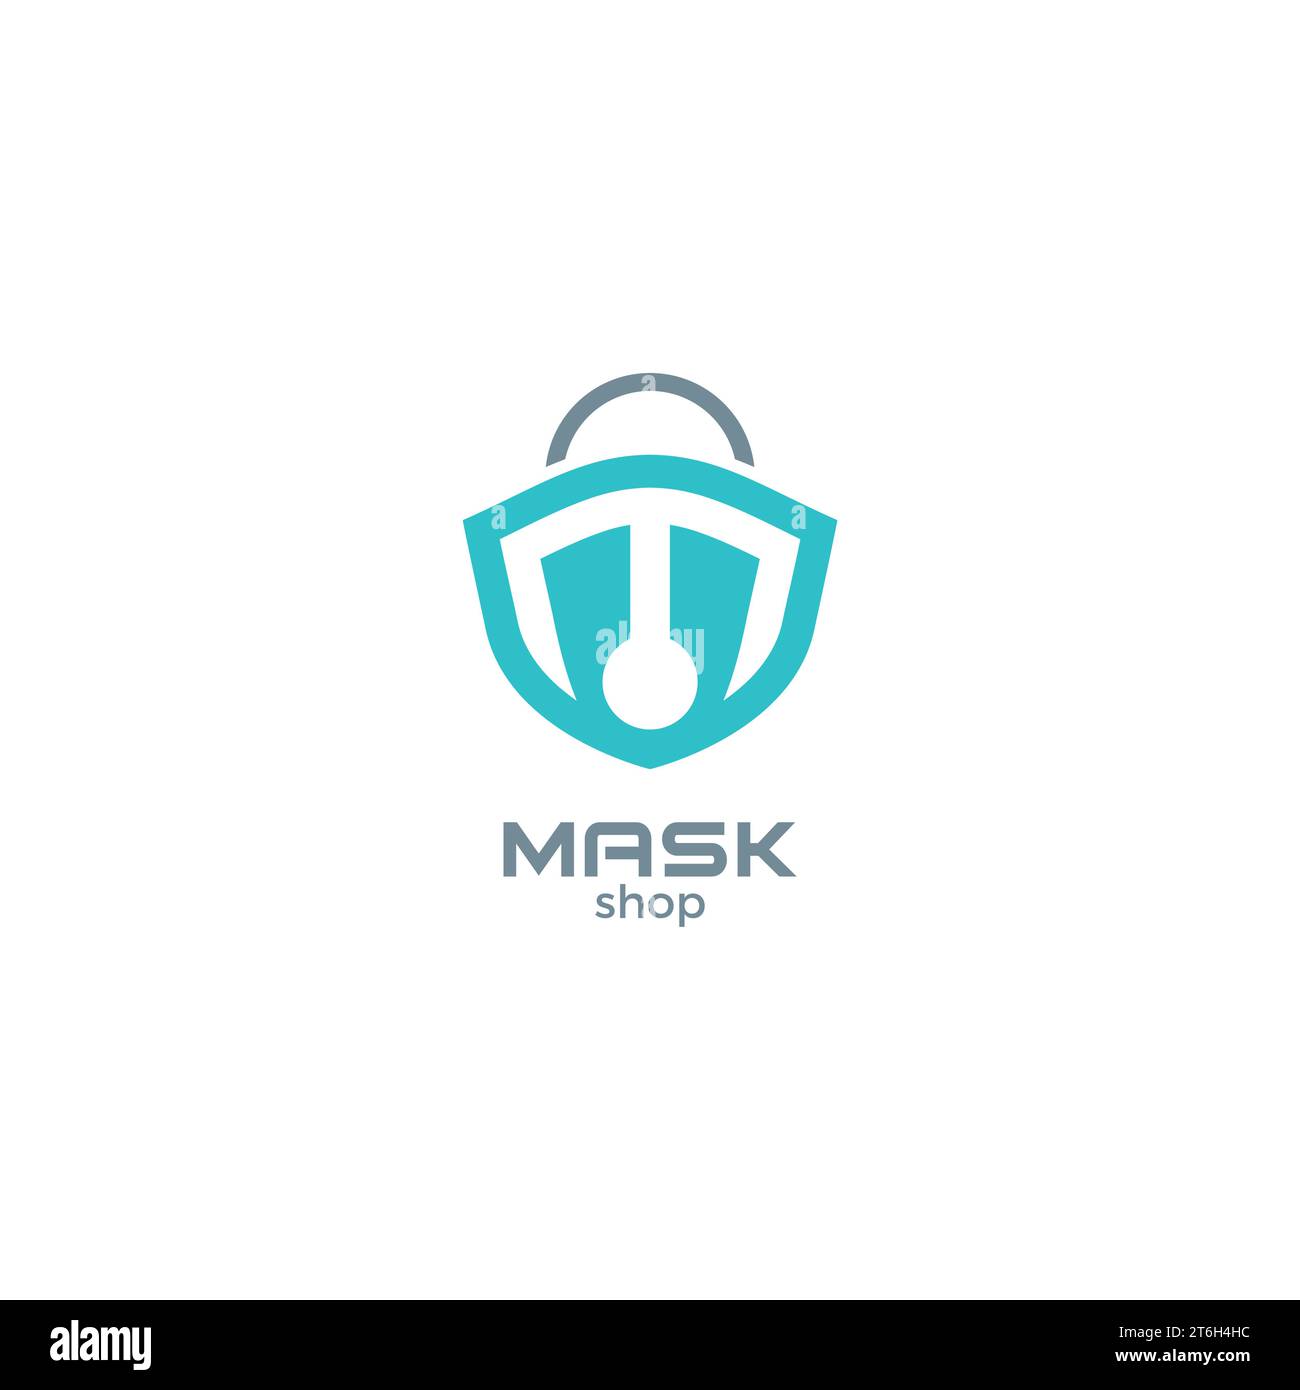 Mask Shop Logo Design. Letter M Mask Logo Stock Vector Image & Art - Alamy